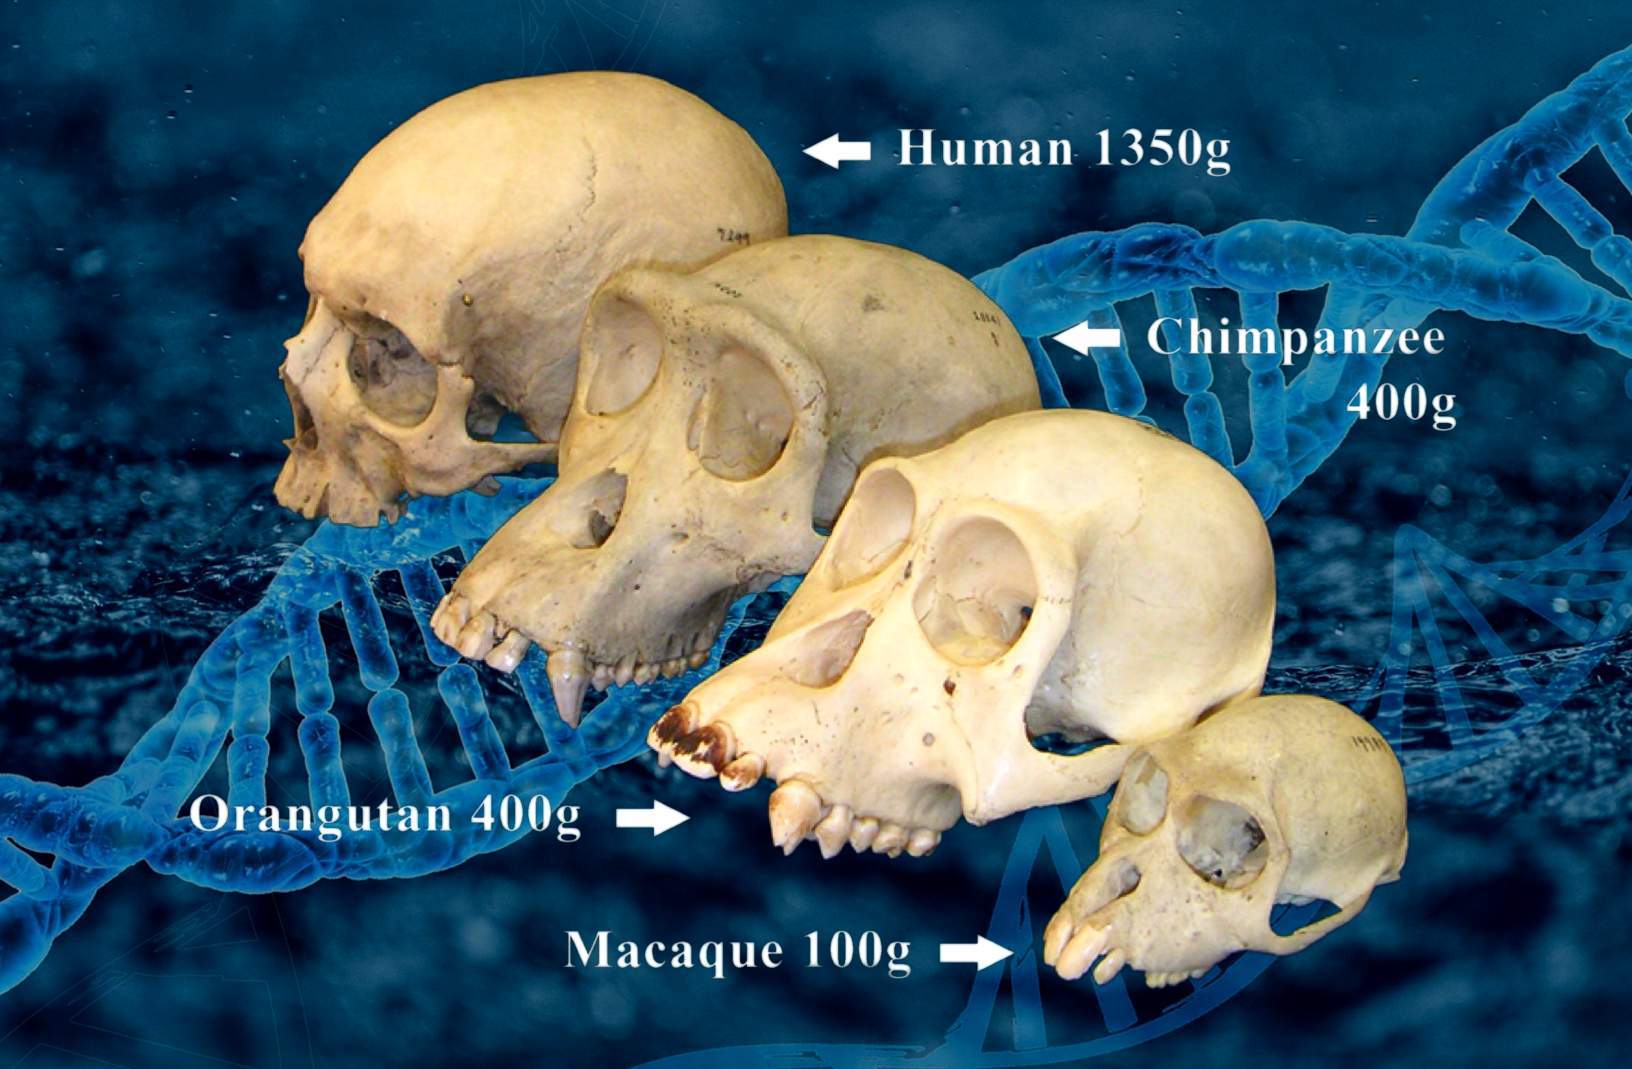 Pirminės kaukolės ir žmogaus kaukolė